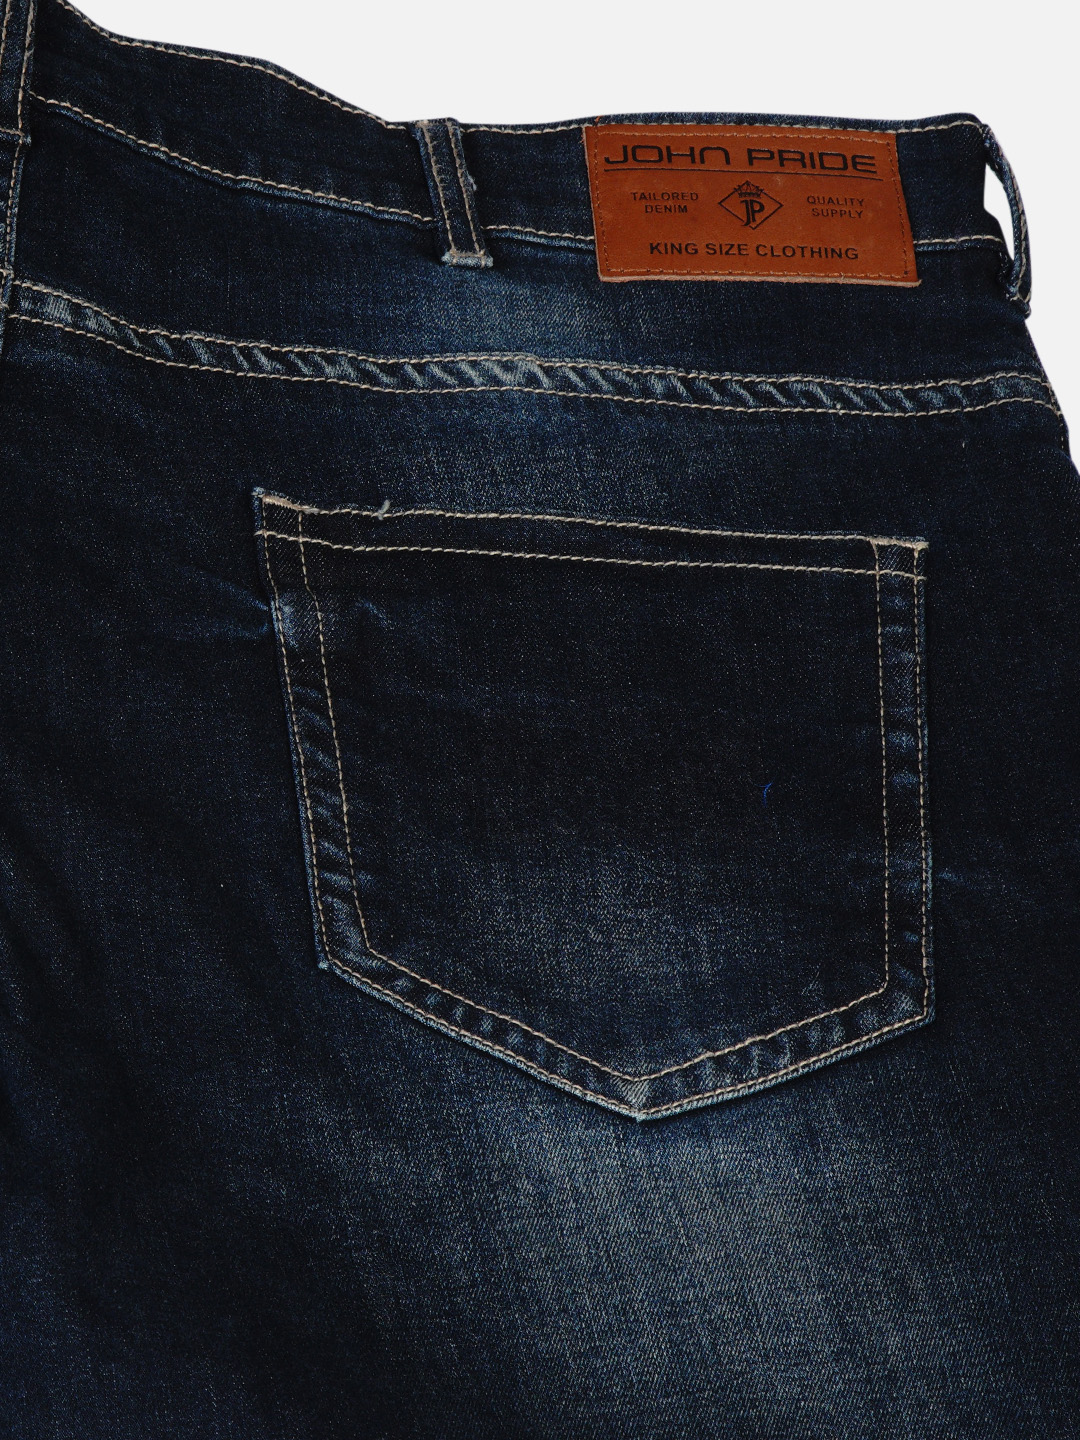 affordables/jeans/JPJ12184/jpj12184-2.jpg